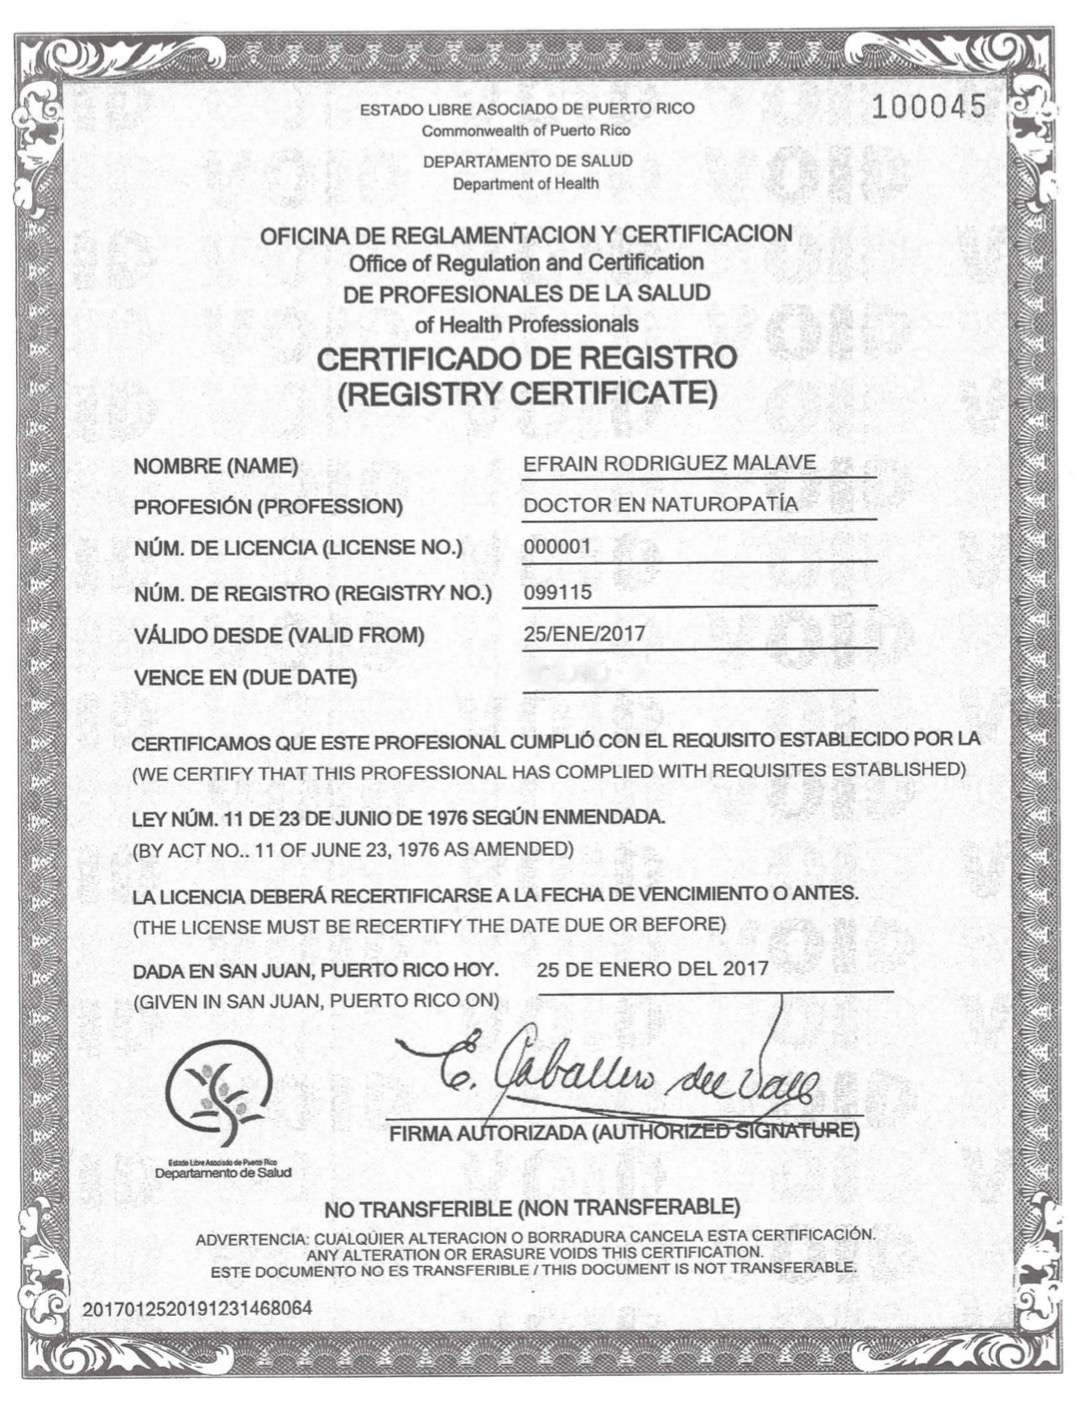 Certificado de Registro Doctor en Naturopatia (modificado)